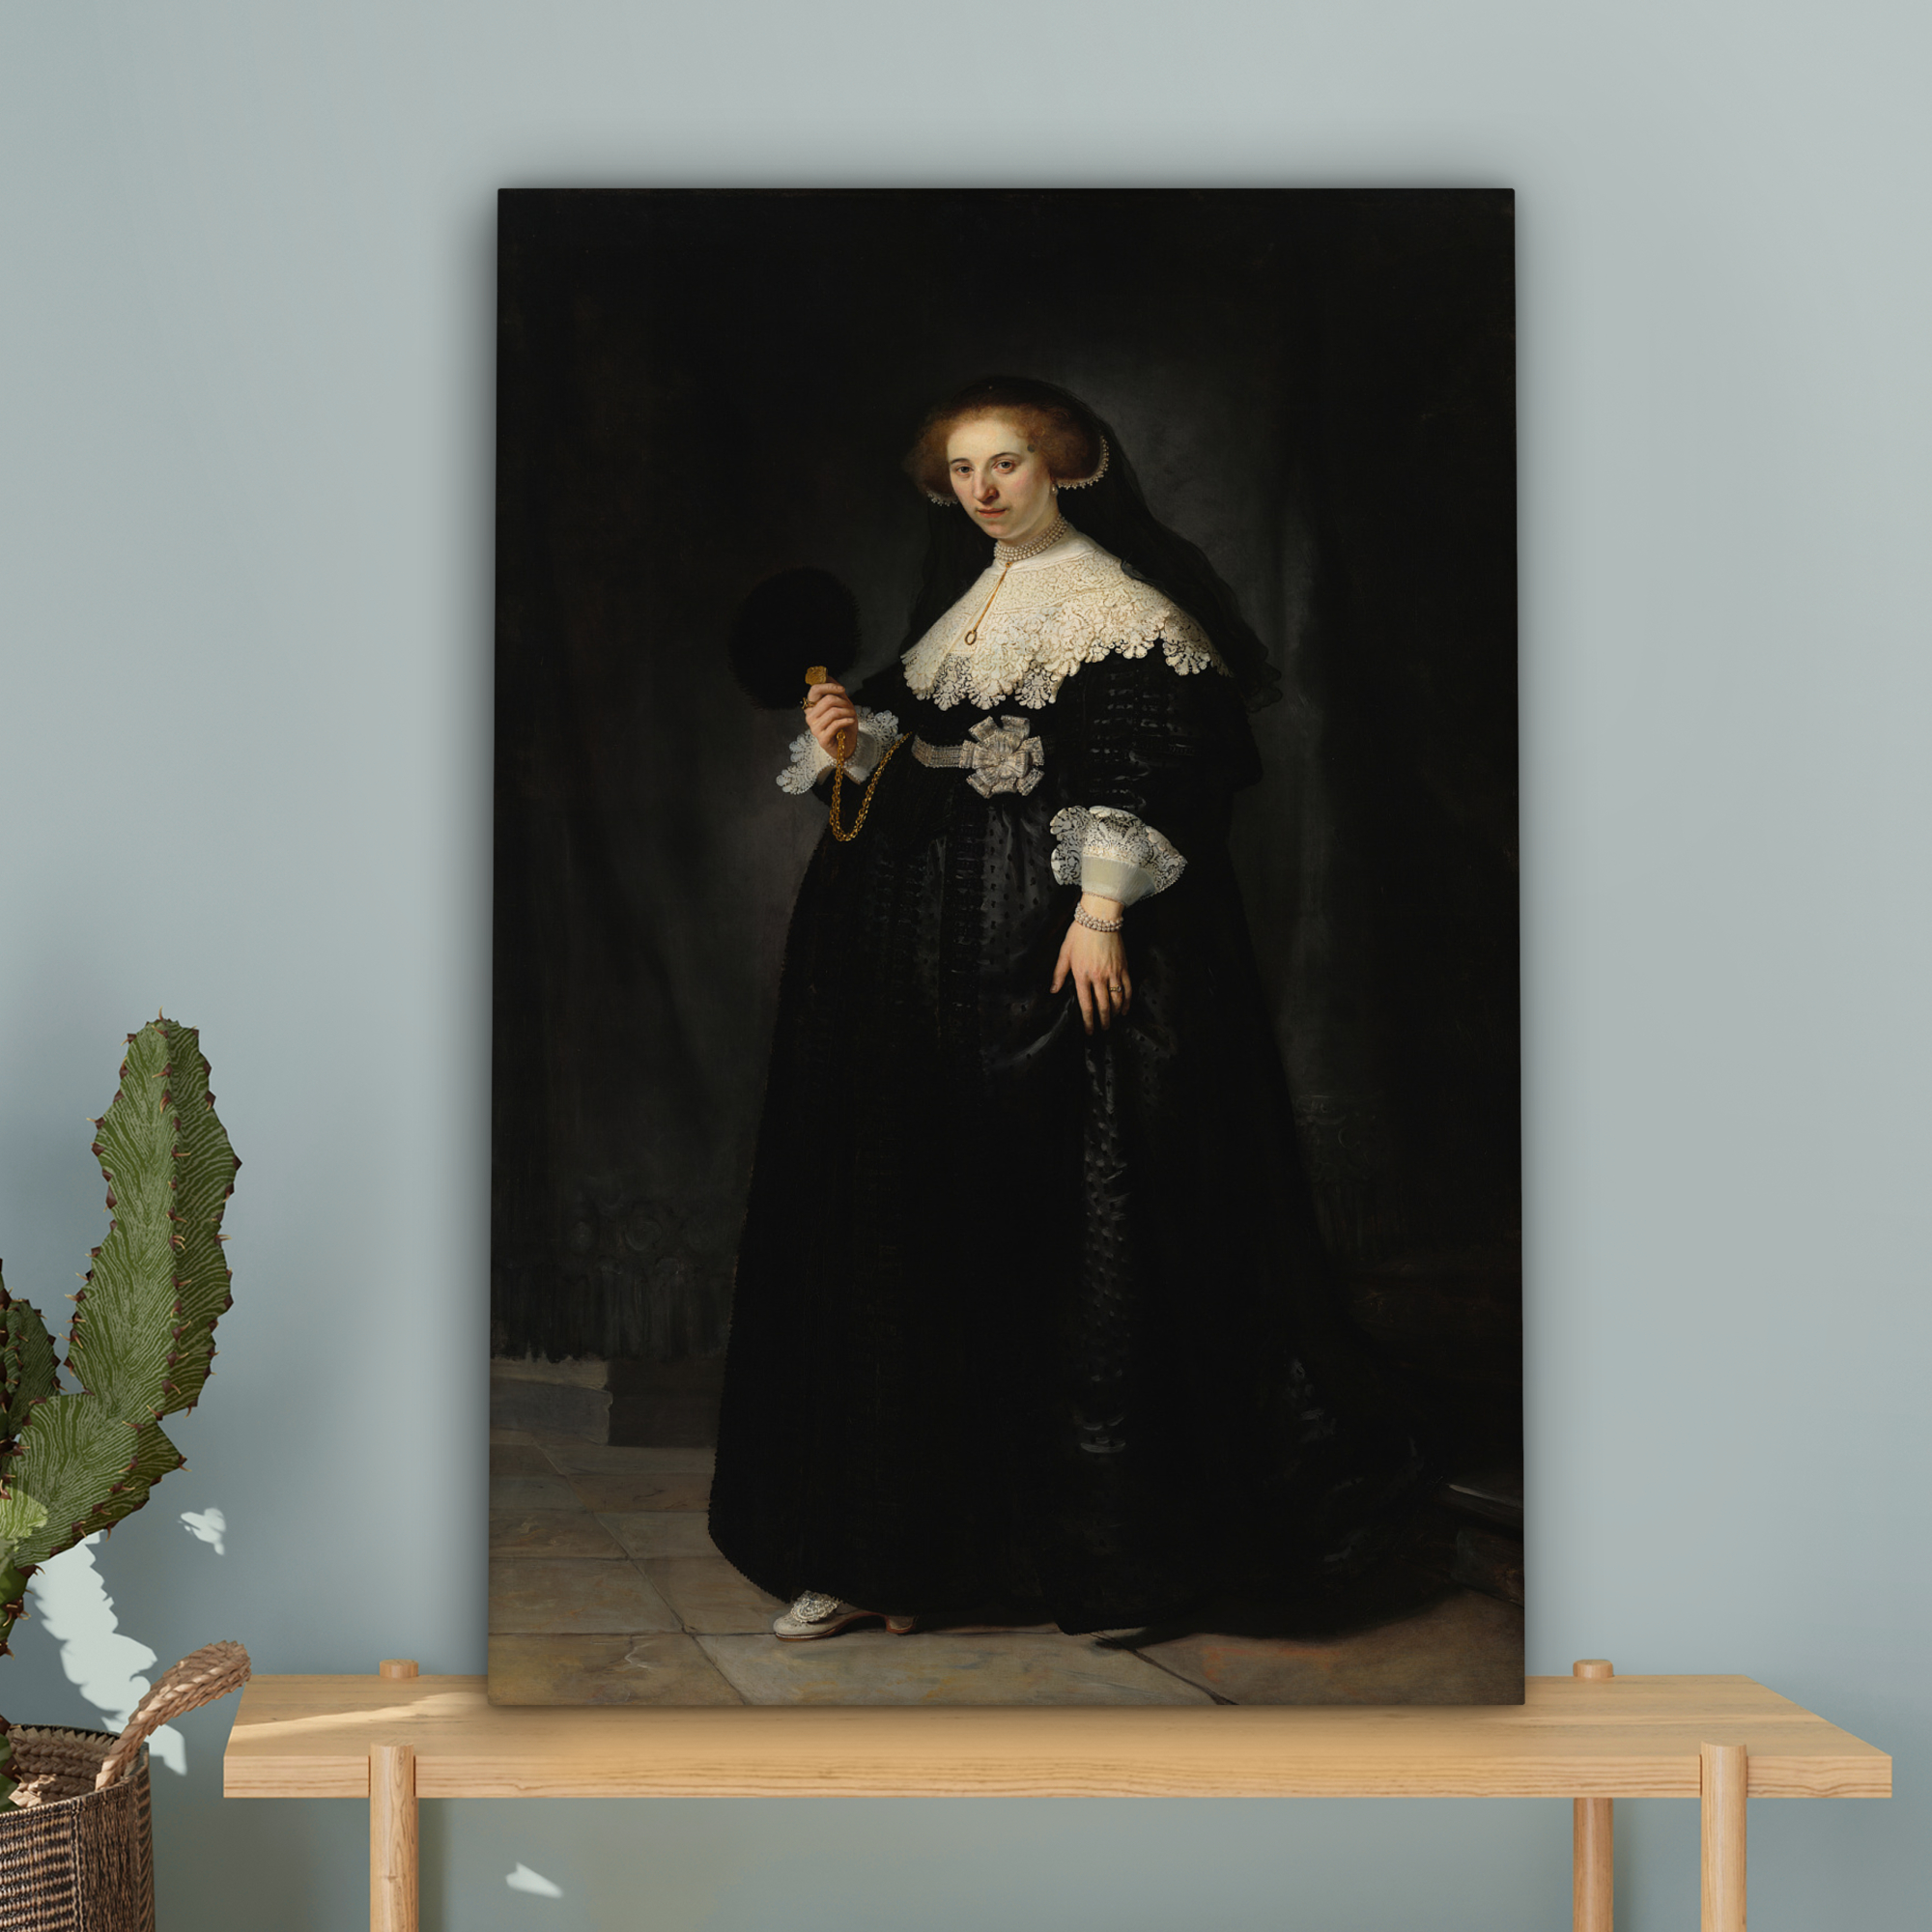 Tableau sur toile - Le portrait de mariage d'Oopjen Coppit - Rembrandt van Rijn-4